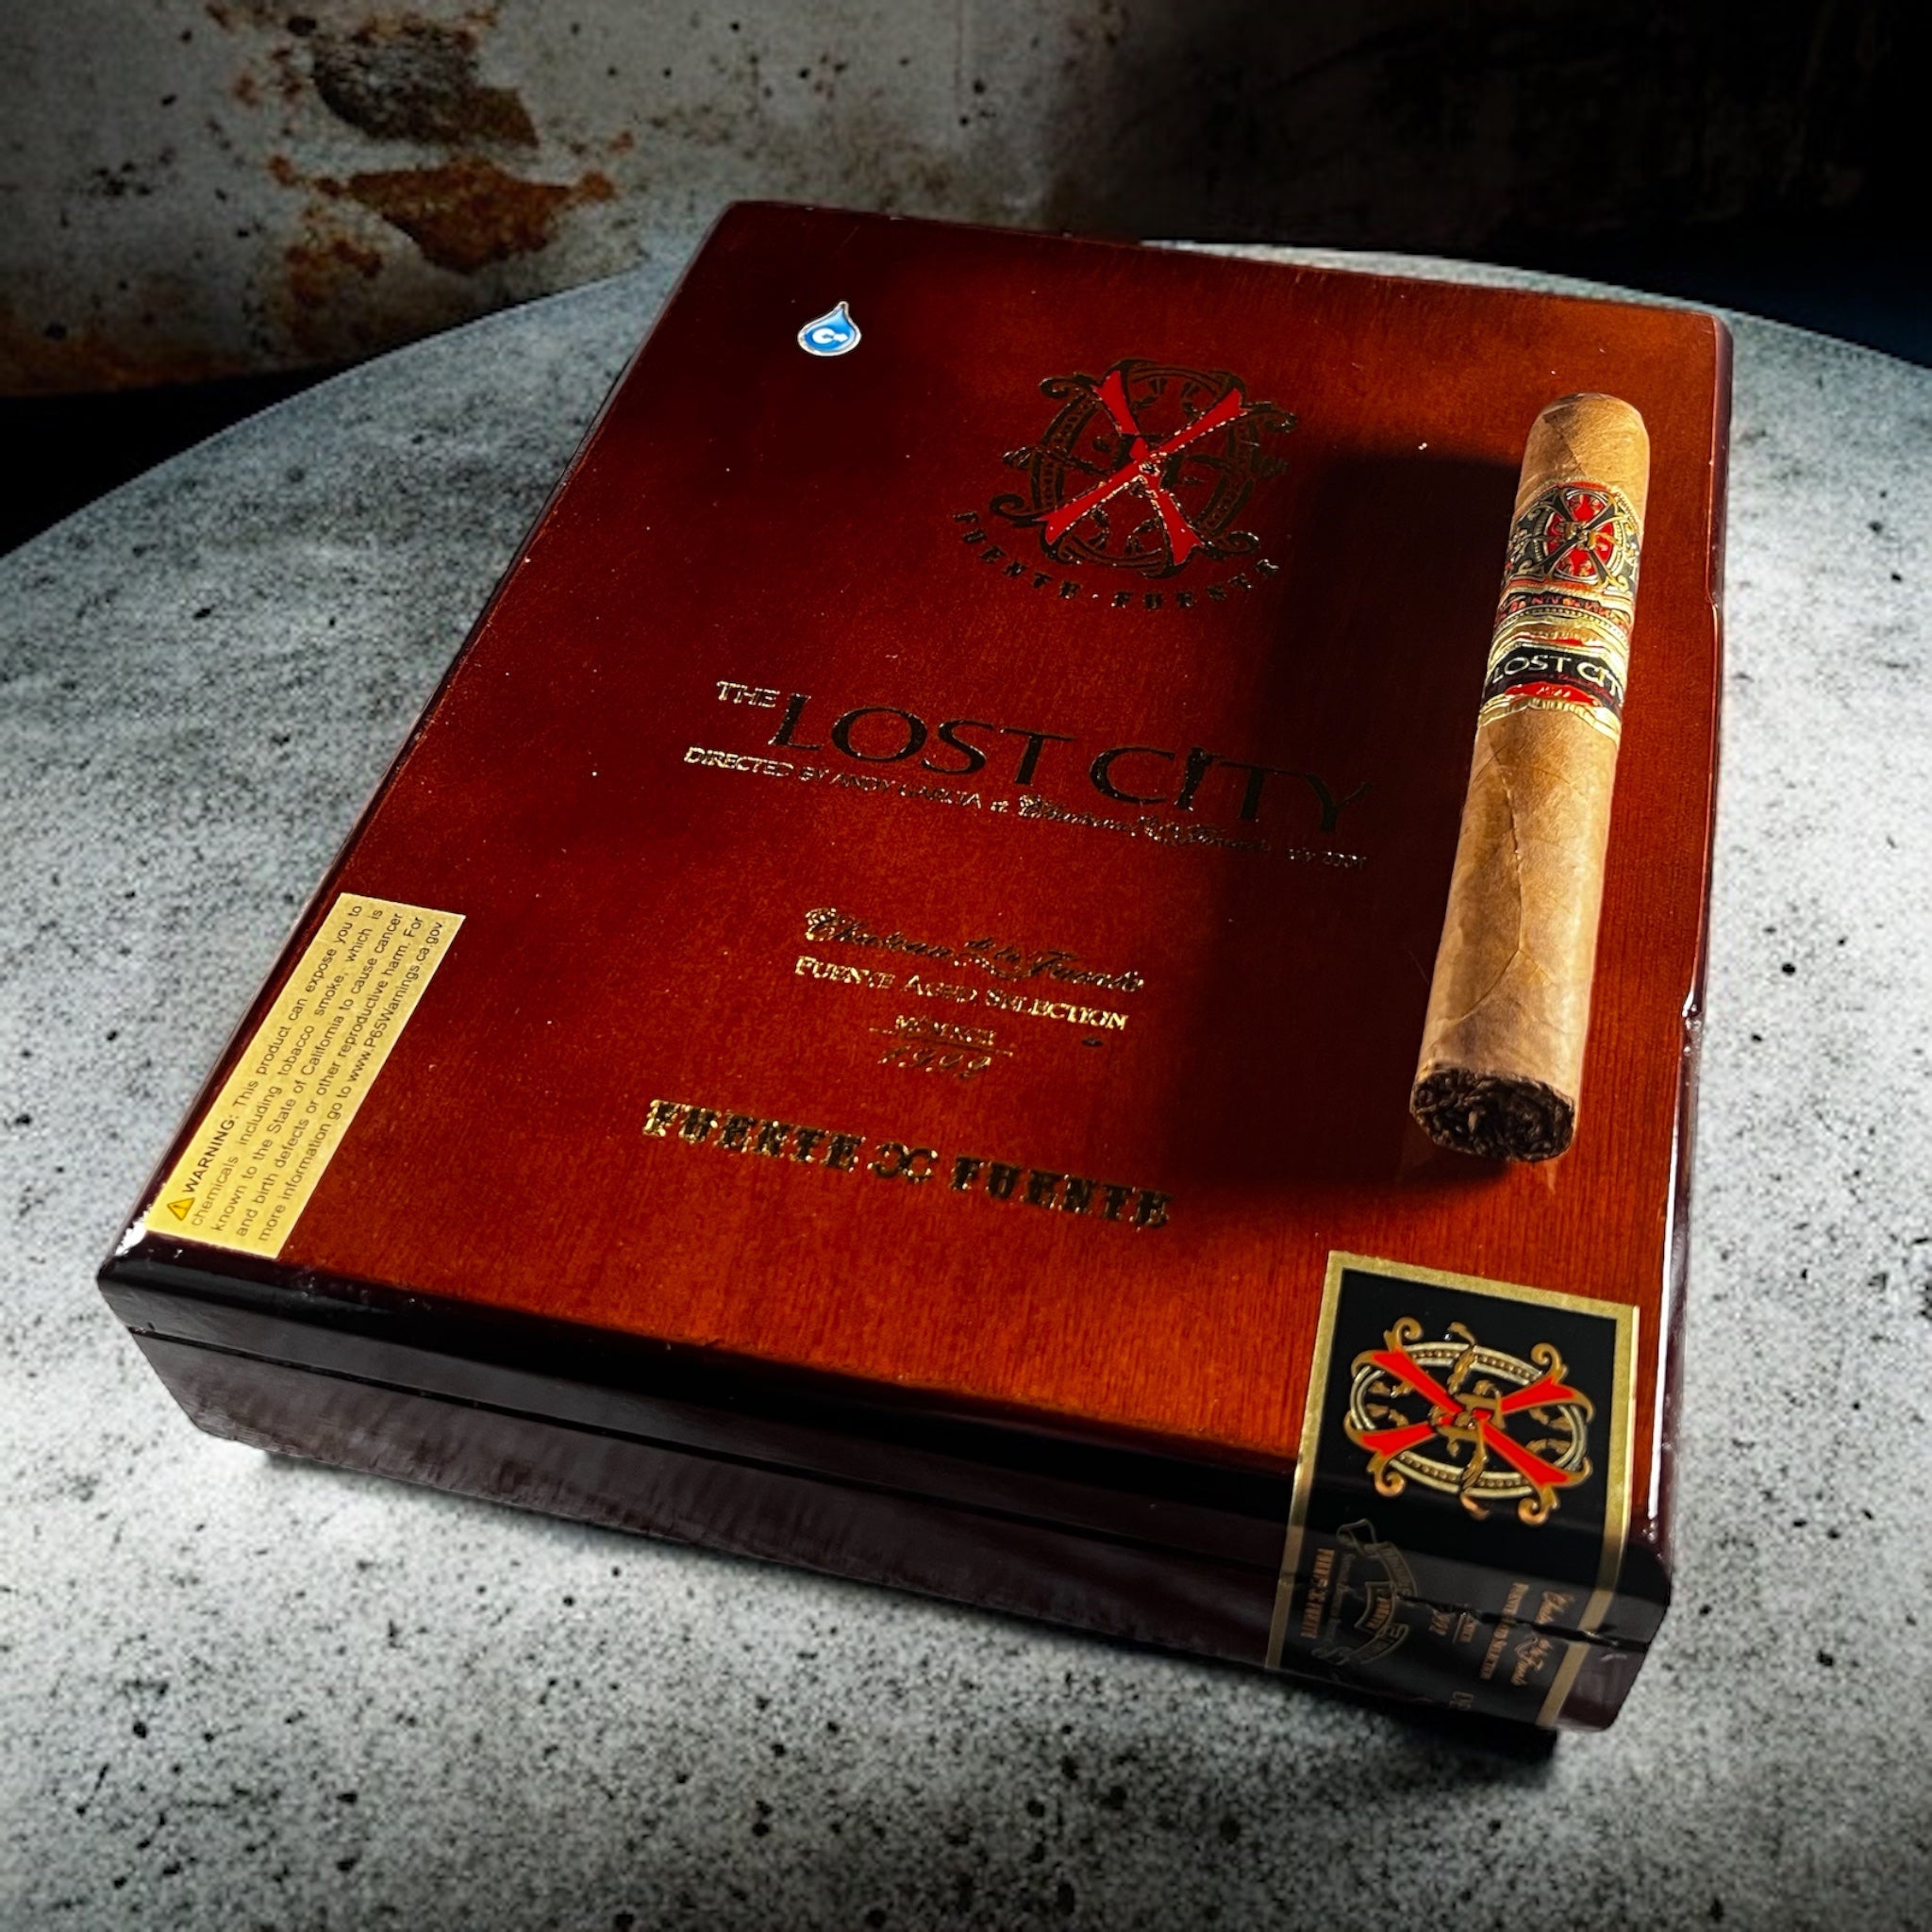 Arturo Fuente Fuente Opus X Lost City Double Robusto - Cigar 30